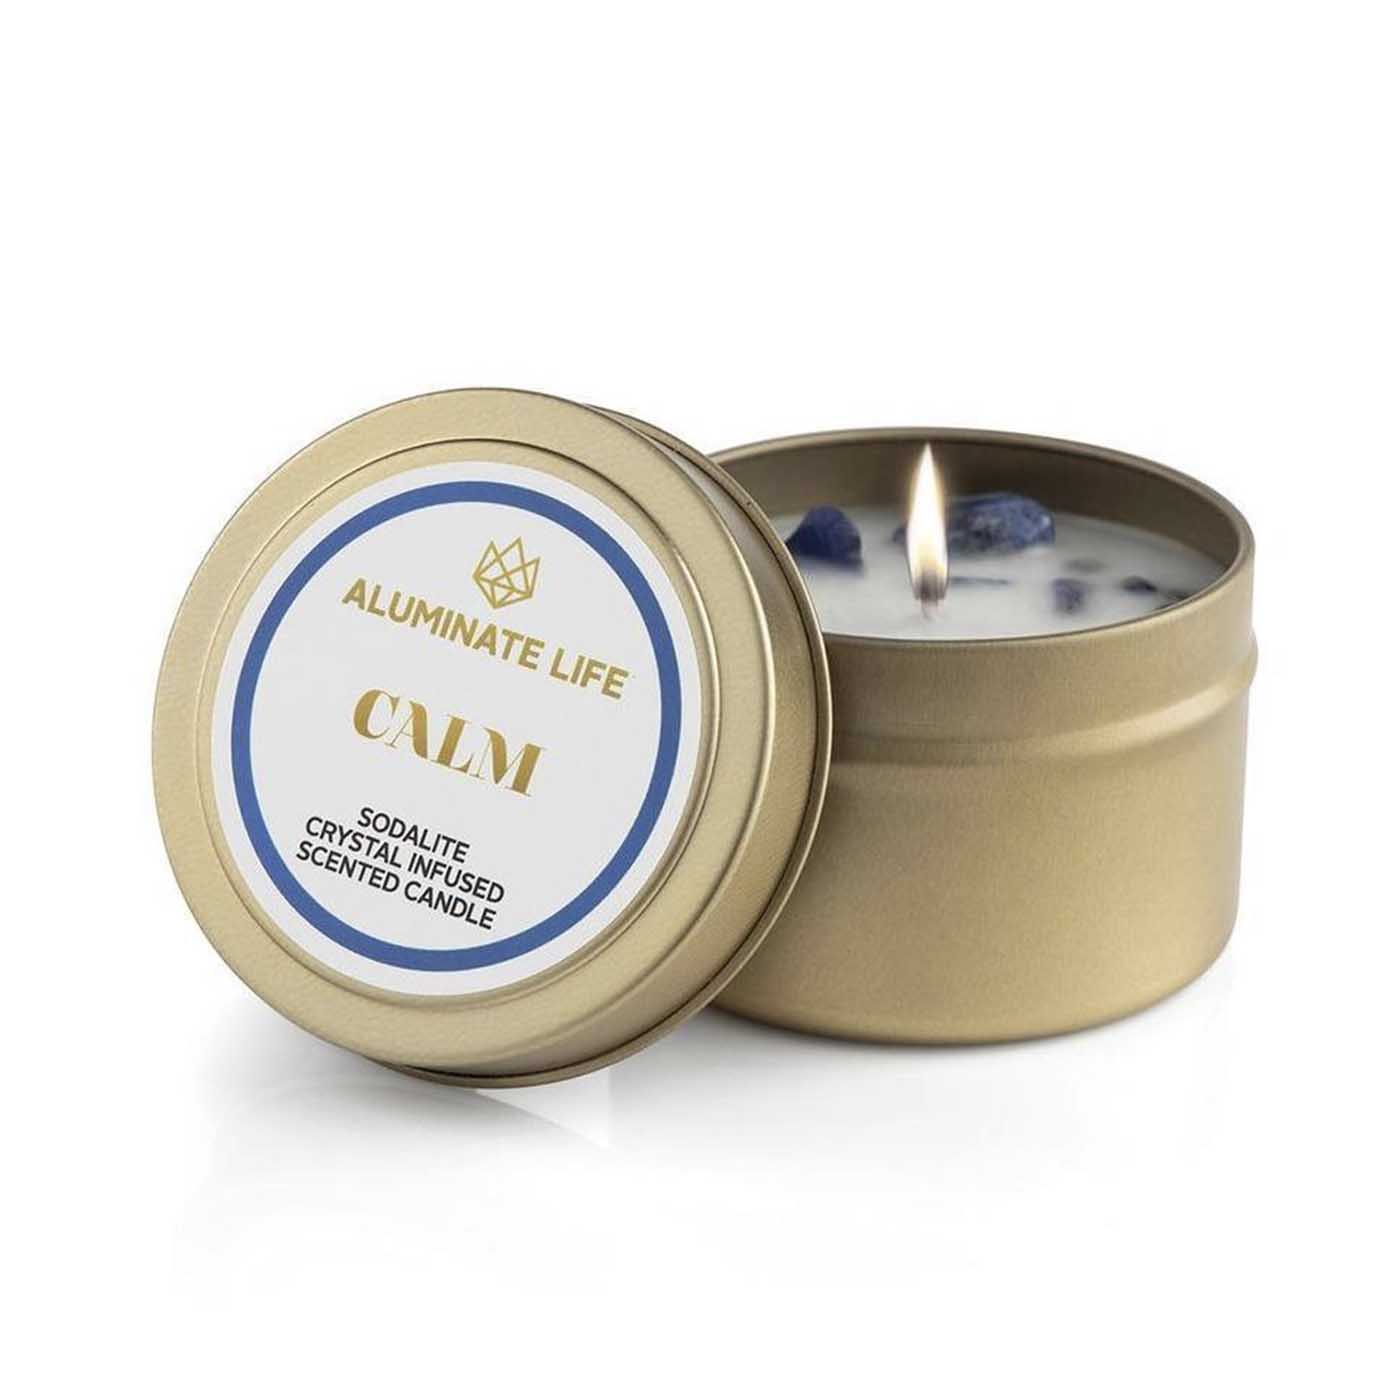 Calm Candle Tin | Aluminate Life